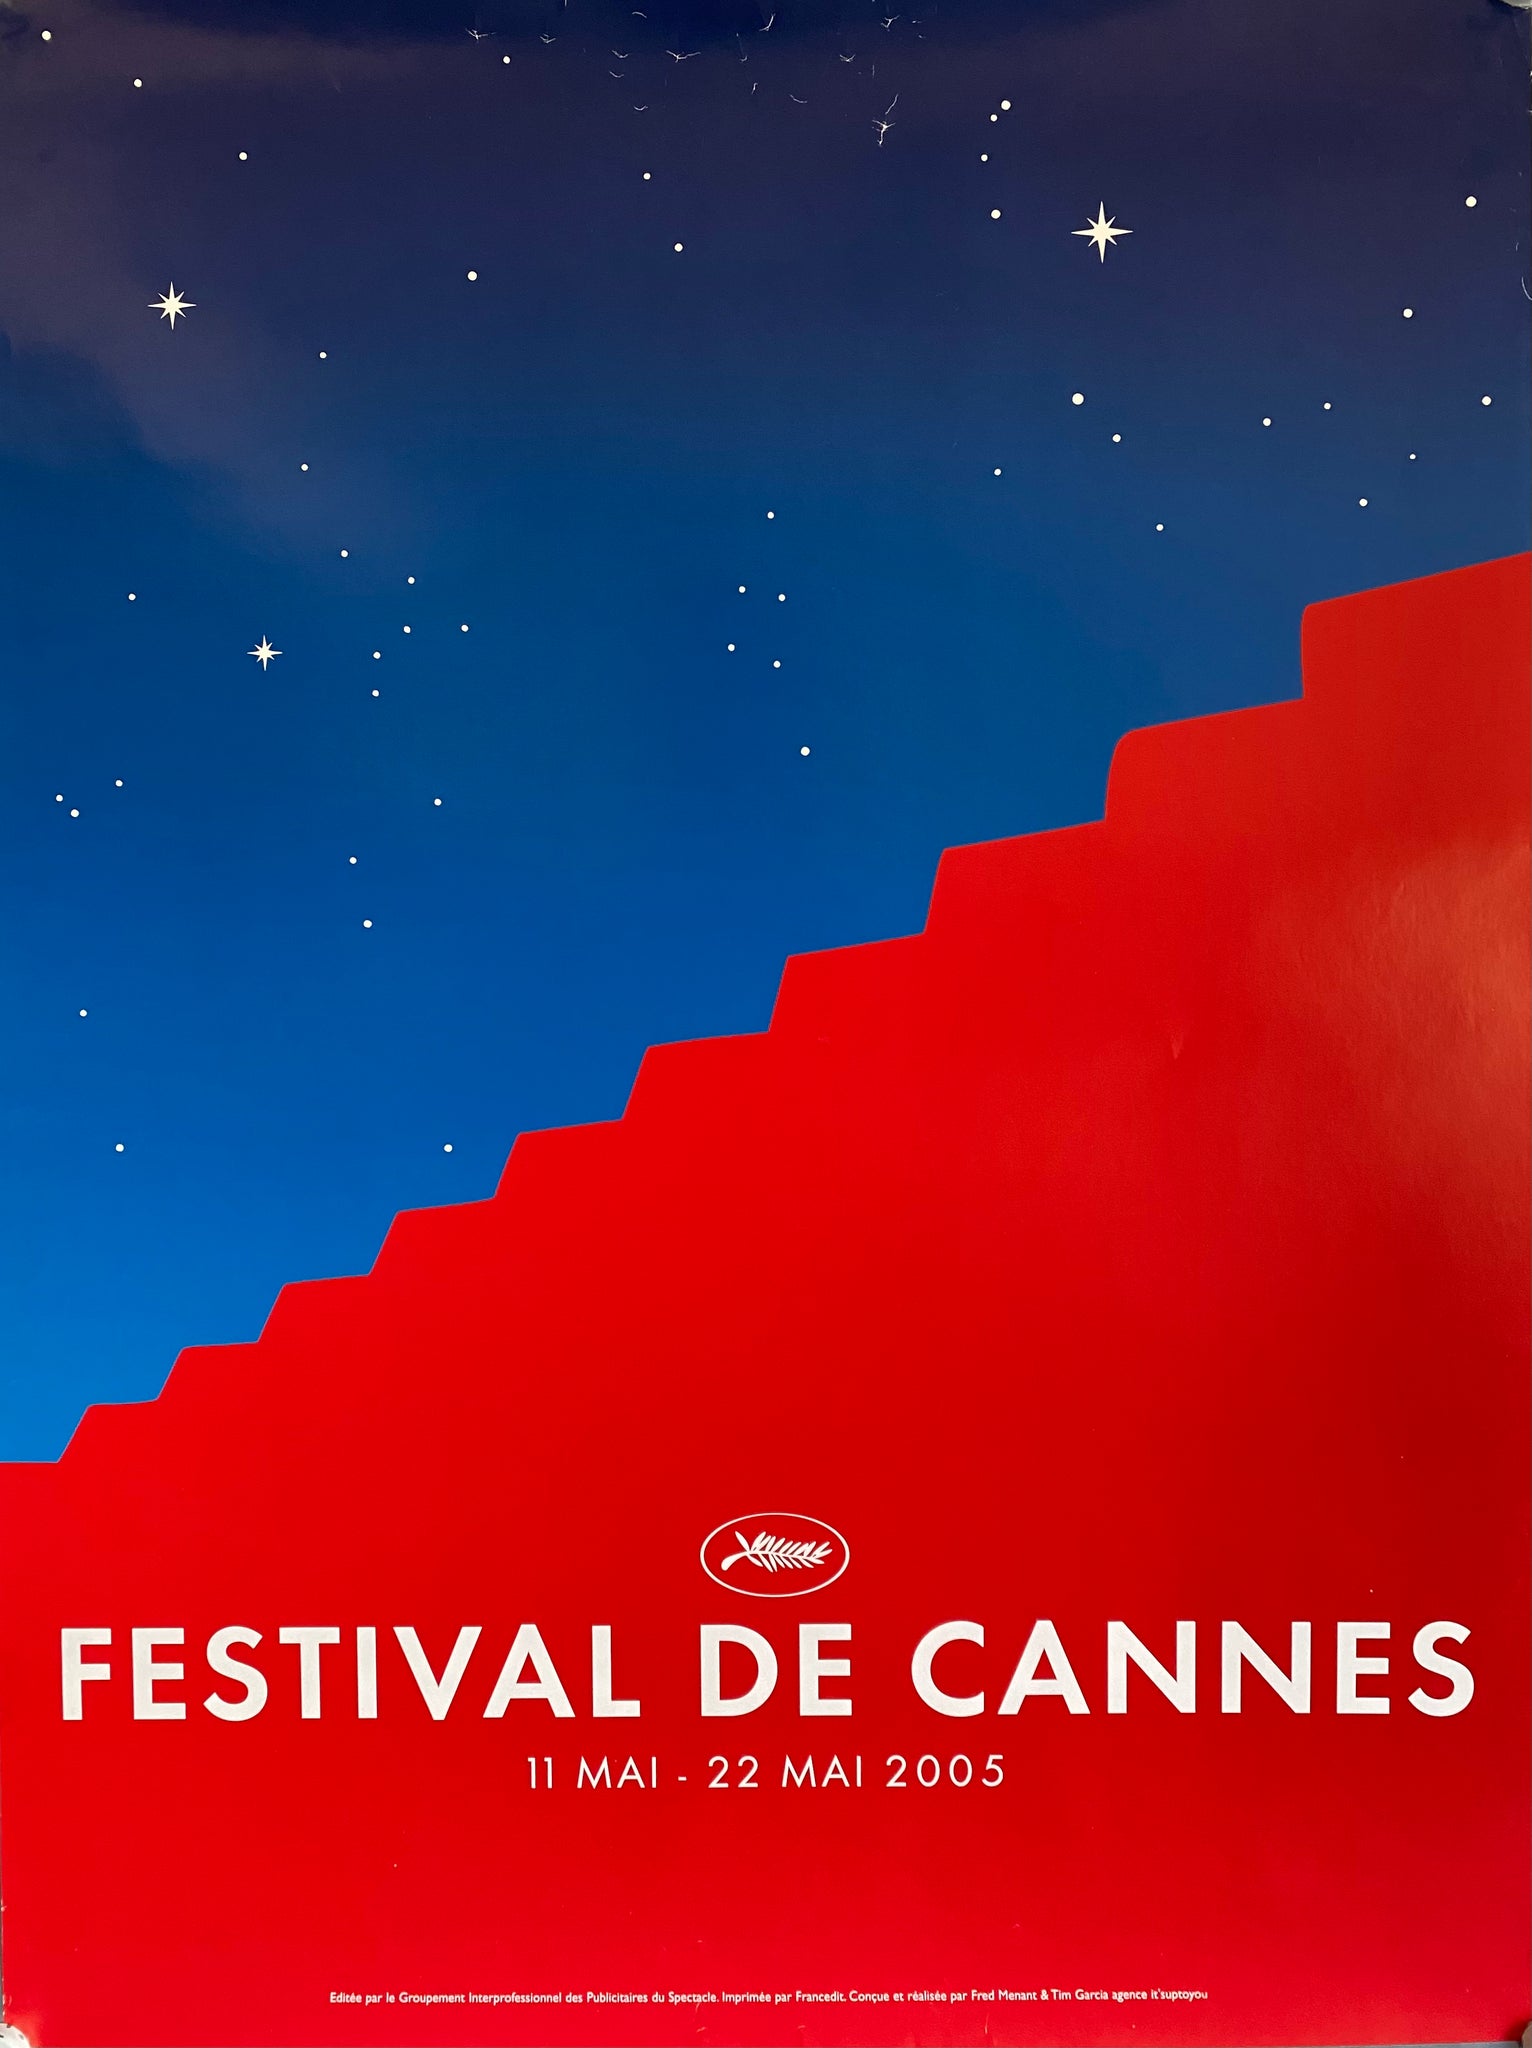 Le Festival de Cannes - L'événement cinématographique incontournable   Un lieu de rencontre pour les professionnels du cinéma